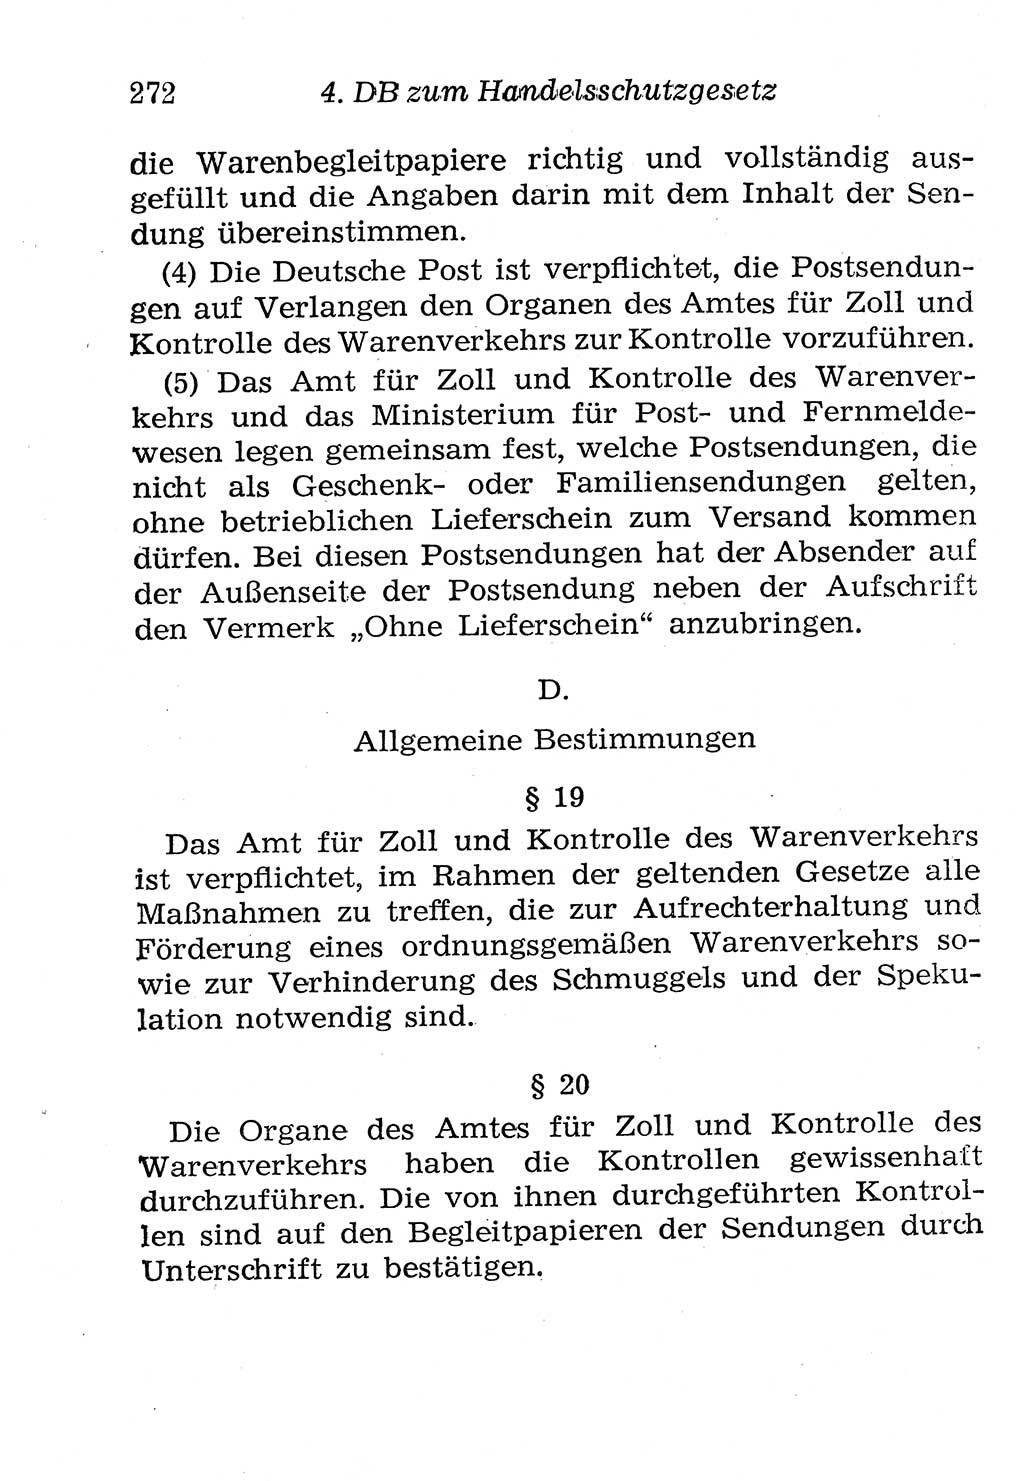 Strafgesetzbuch (StGB) und andere Strafgesetze [Deutsche Demokratische Republik (DDR)] 1958, Seite 272 (StGB Strafges. DDR 1958, S. 272)